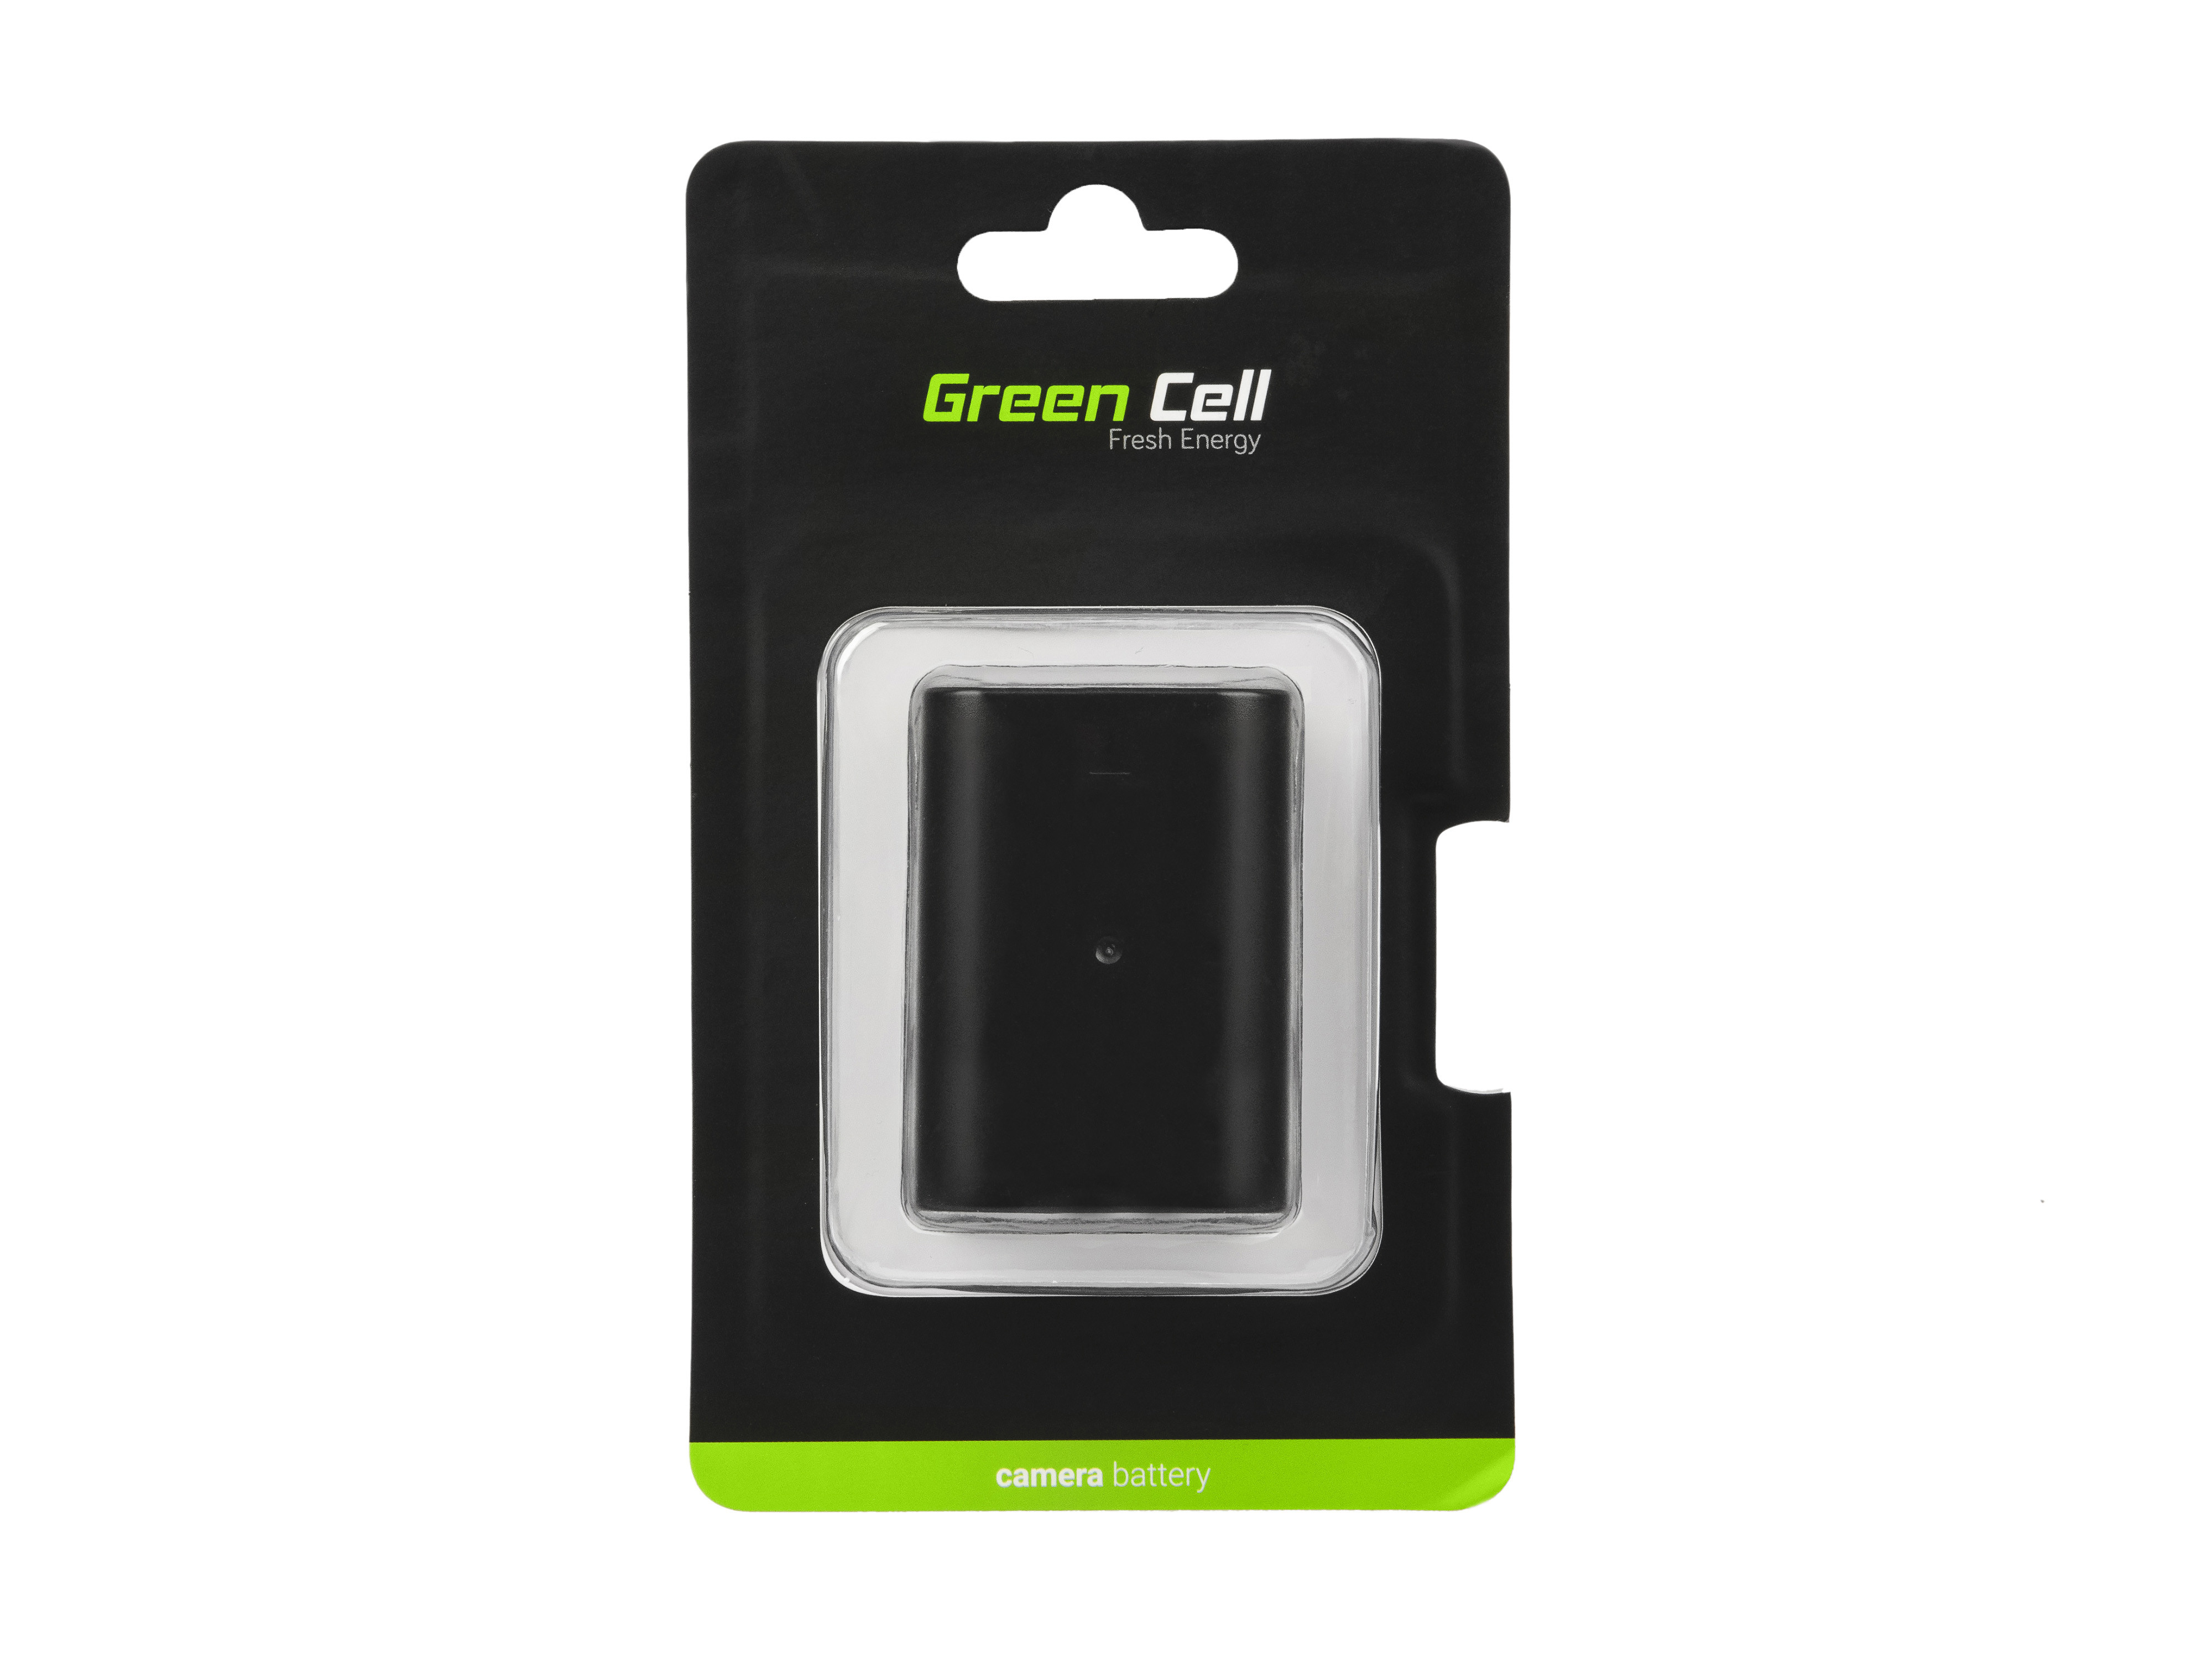 EOL-Green Cell Camera Battery D-LI90 for Pentax K-01 K-3 K-3 II K-3 III K-5 K-5 II K-7 645 645D 645Z, Full Decoded 7.4V 1600mAh